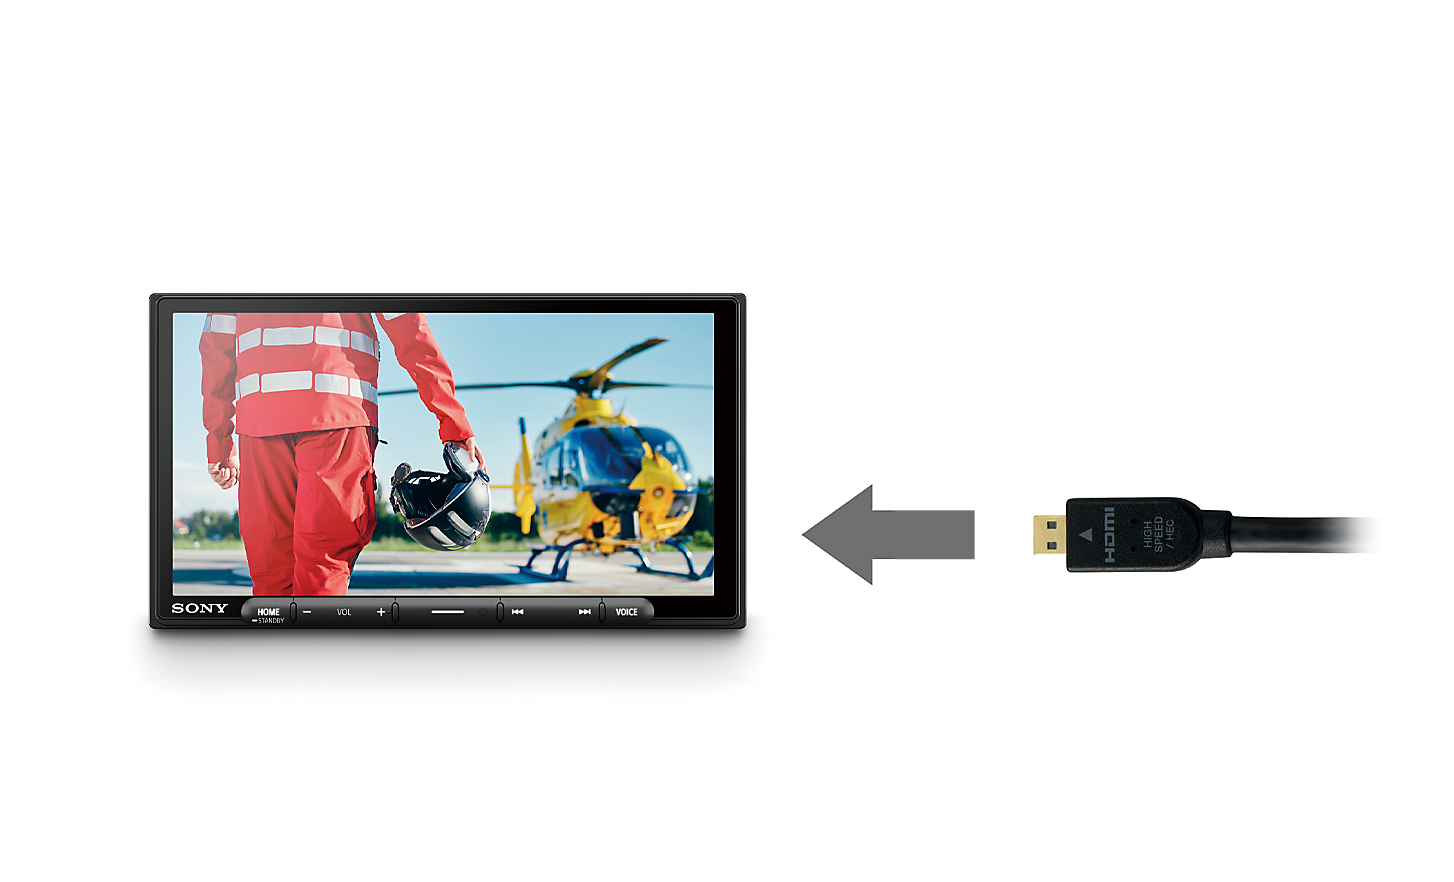 Nuotrauka – HDMI kabelis su rodykle, nukreipta į XAV-AX6050, ekrane matyti pilotas ir sraigtasparnis.